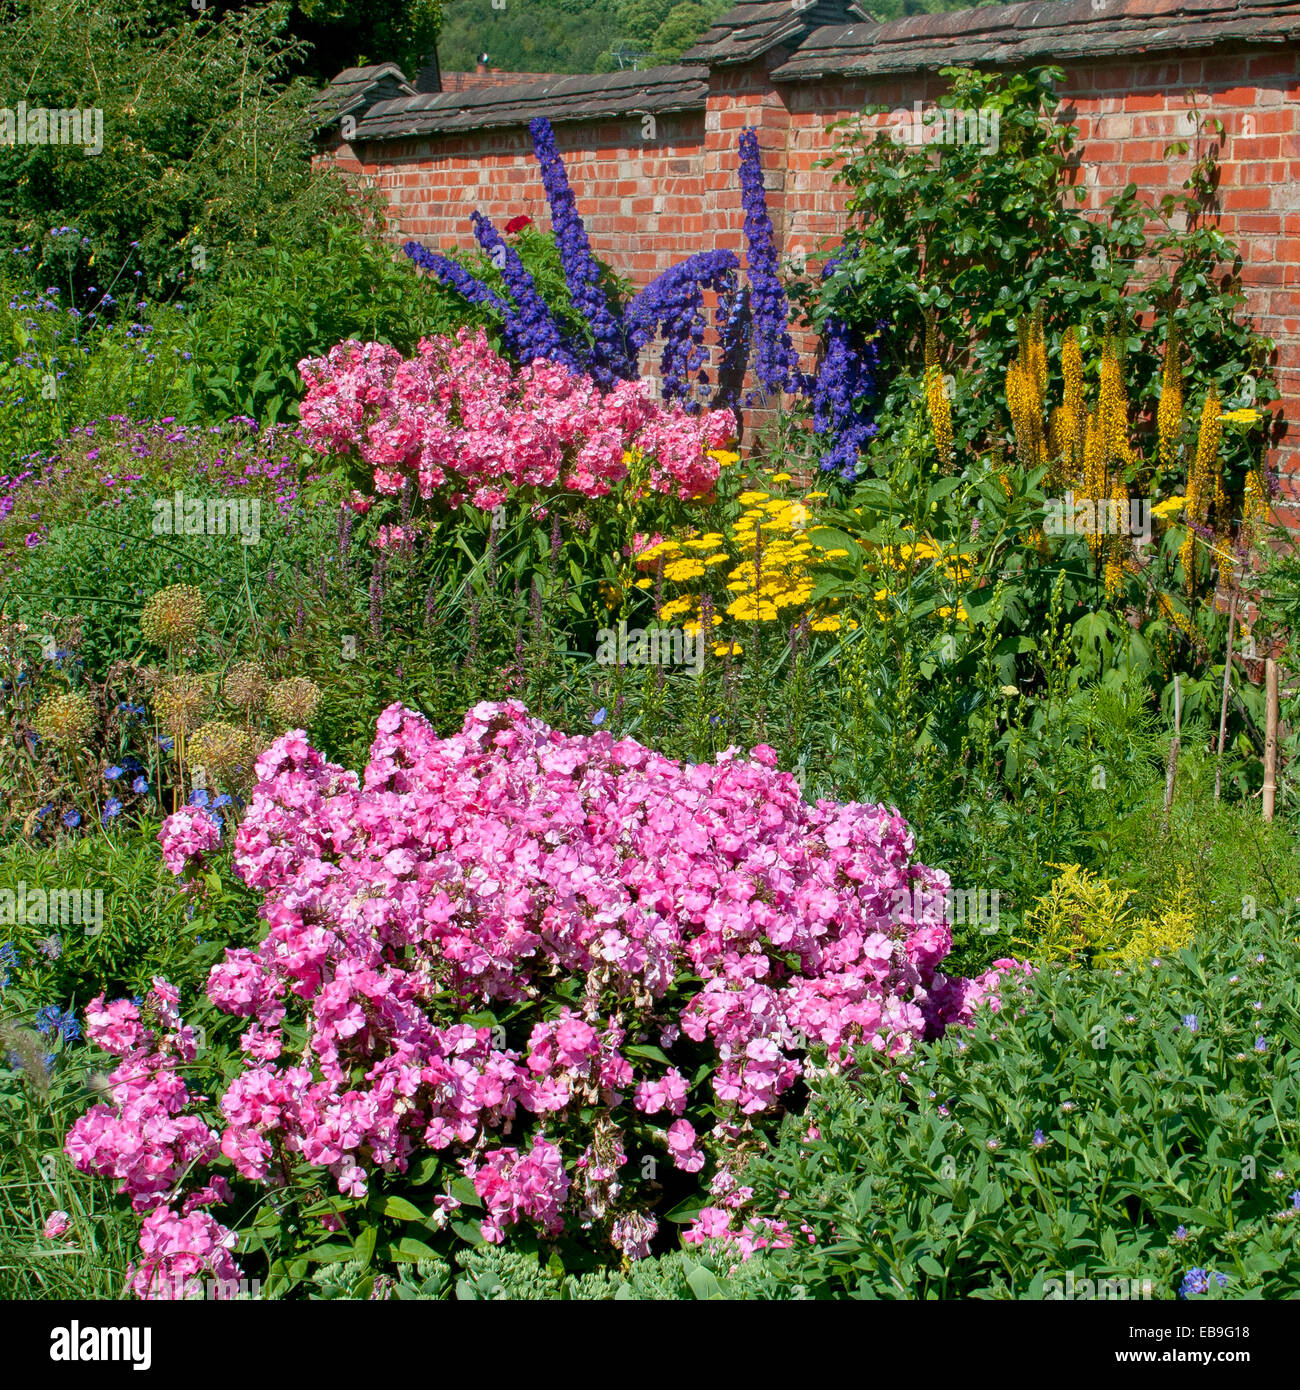 Impatiens rosa, blu Delphiniums, achillea gialla, fiori in una parete del giardino inglese in Inghilterra Foto Stock